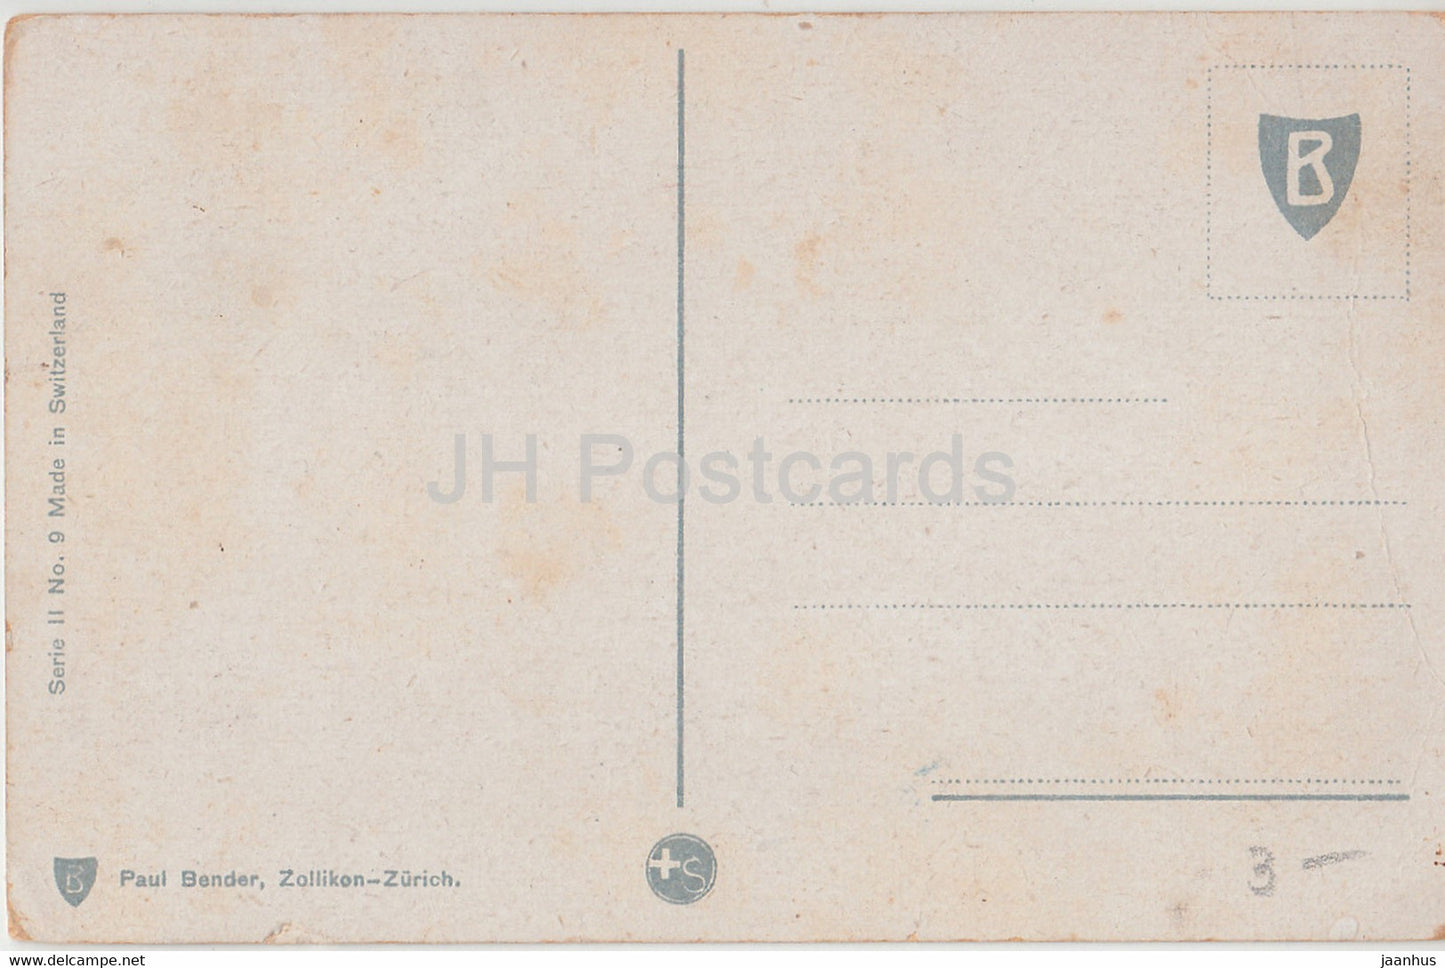 Frau mit Ziege – Serie II Nr. 9 – Paul Bender – alte Postkarte – Schweiz – unbenutzt